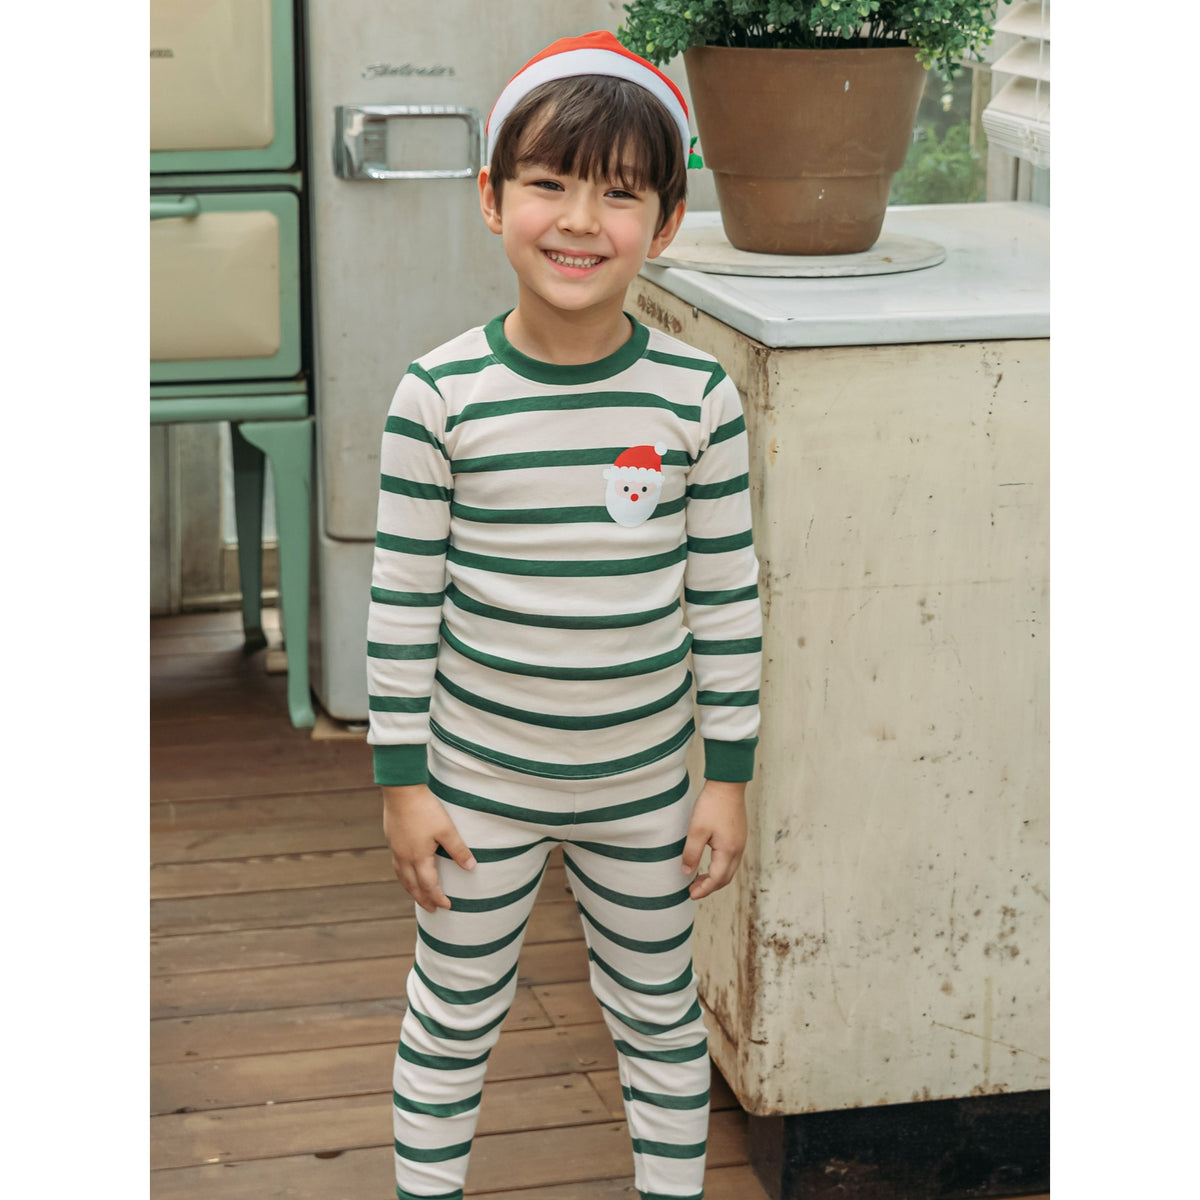 Maykids | Santa Striped Organic Christmas Pajama Set